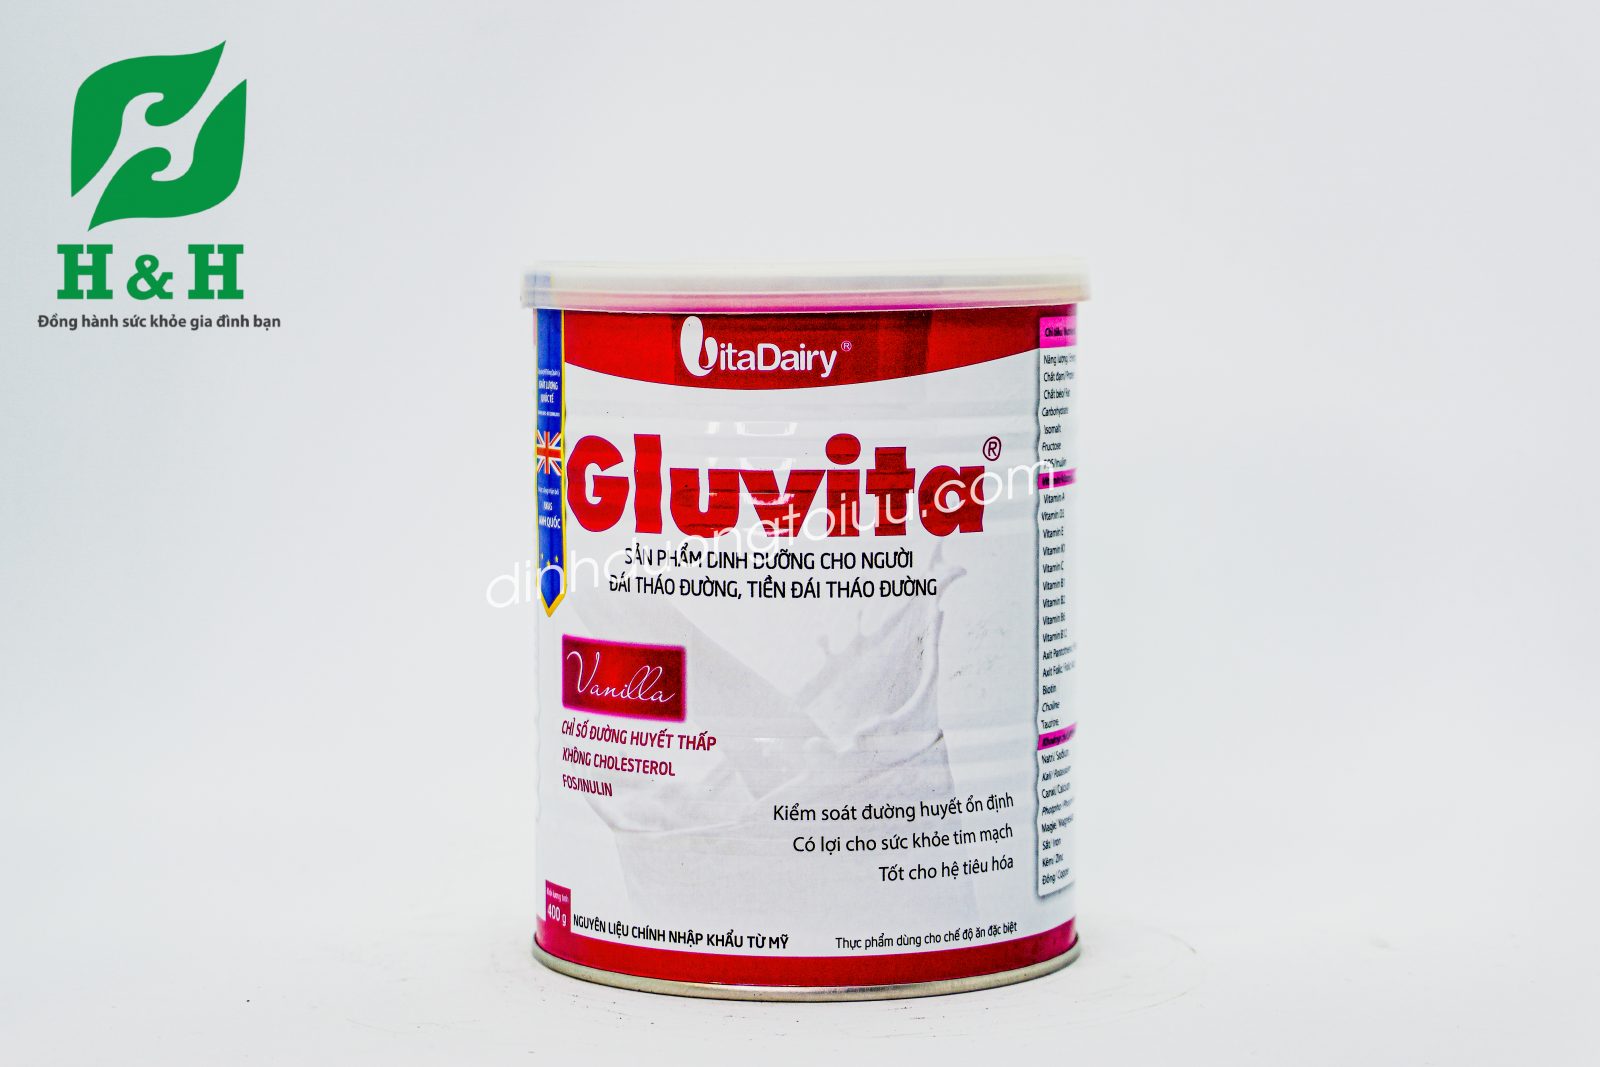 Sữa Gluvita là lựa chọn thích hợp với chế độ dinh dưỡng của bệnh nhân đái tháo đường và tiền đái tháo đường